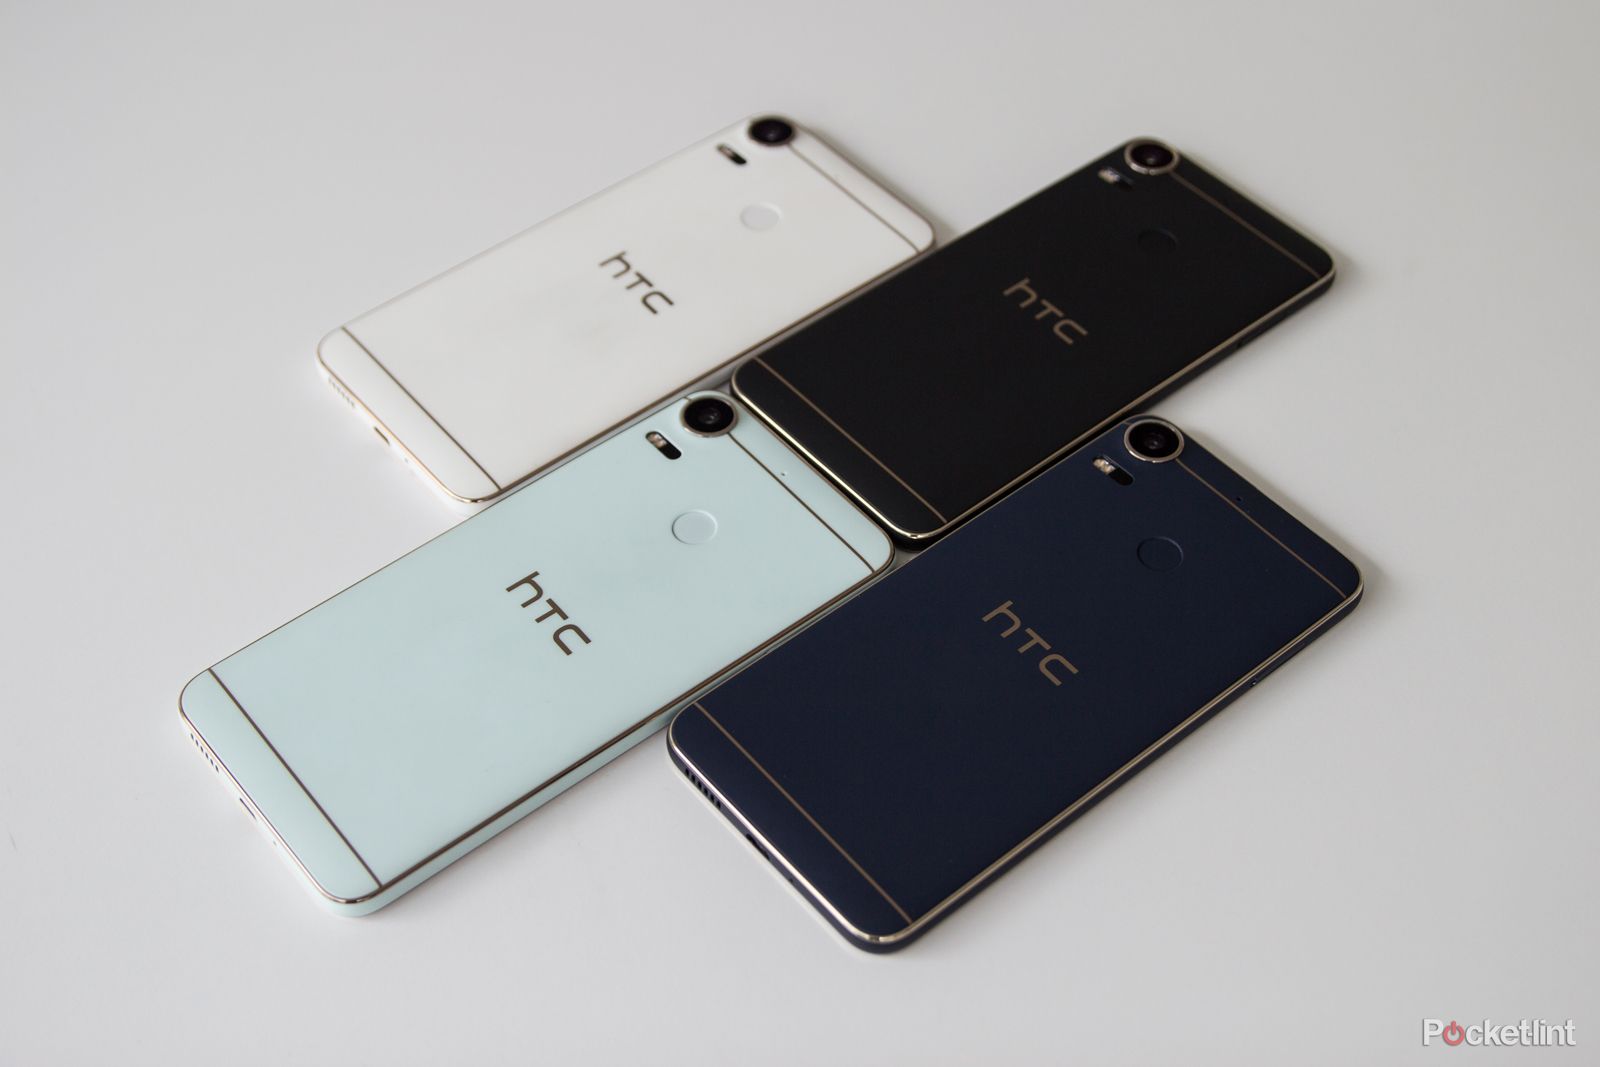 tragedie Middag eten Monumentaal HTC Desire 10 Pro preview: Een smartphone met de naam Desire